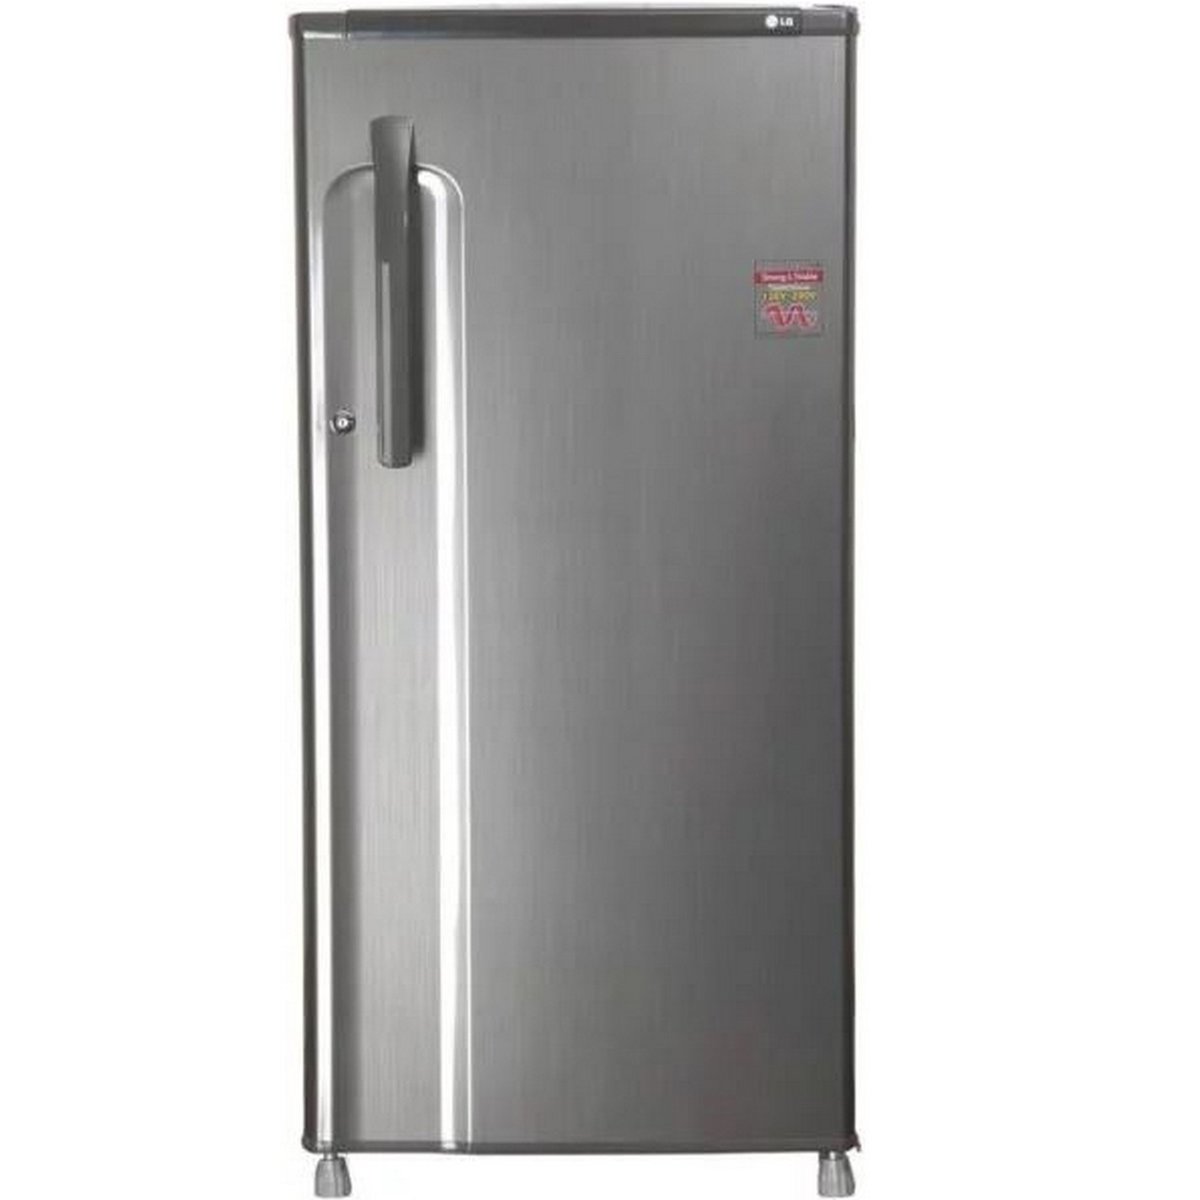 LG Single Door Refrigerator GR221ALL 200Ltr